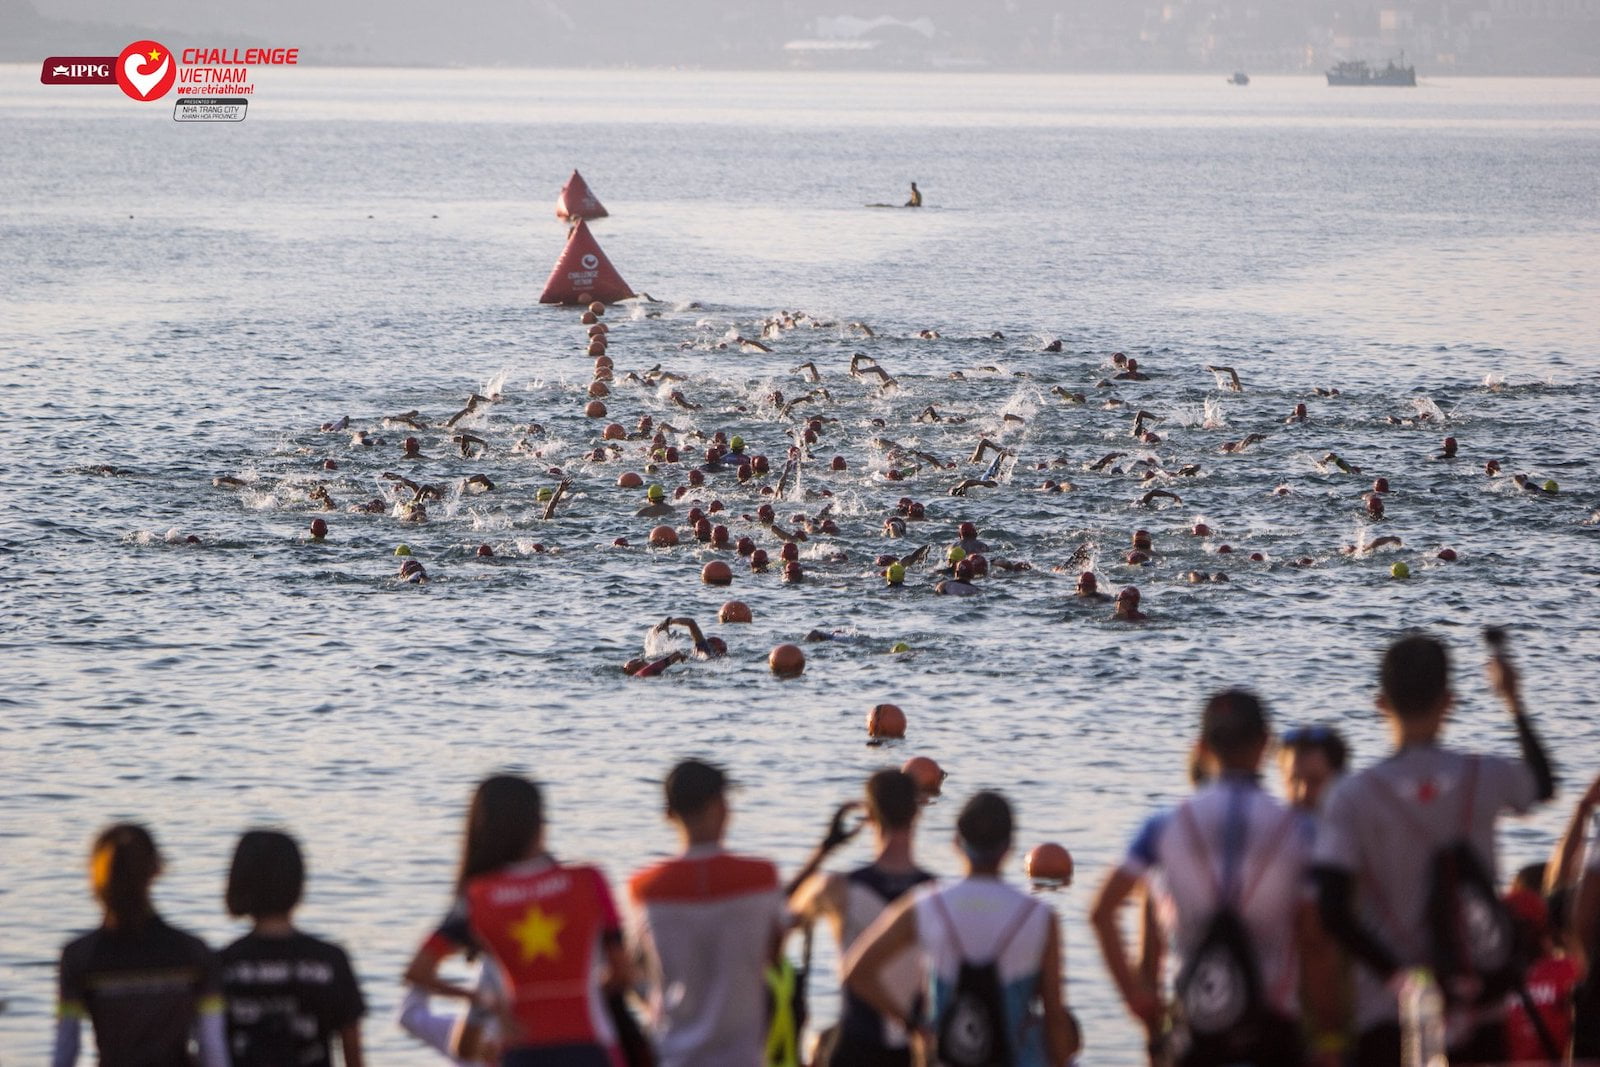 Kí sự Challenge Vietnam 2019 - [Phần 2] Tận hưởng biển êm, chịu đựng dốc đứng - challenge vietnam 2019 swimming start